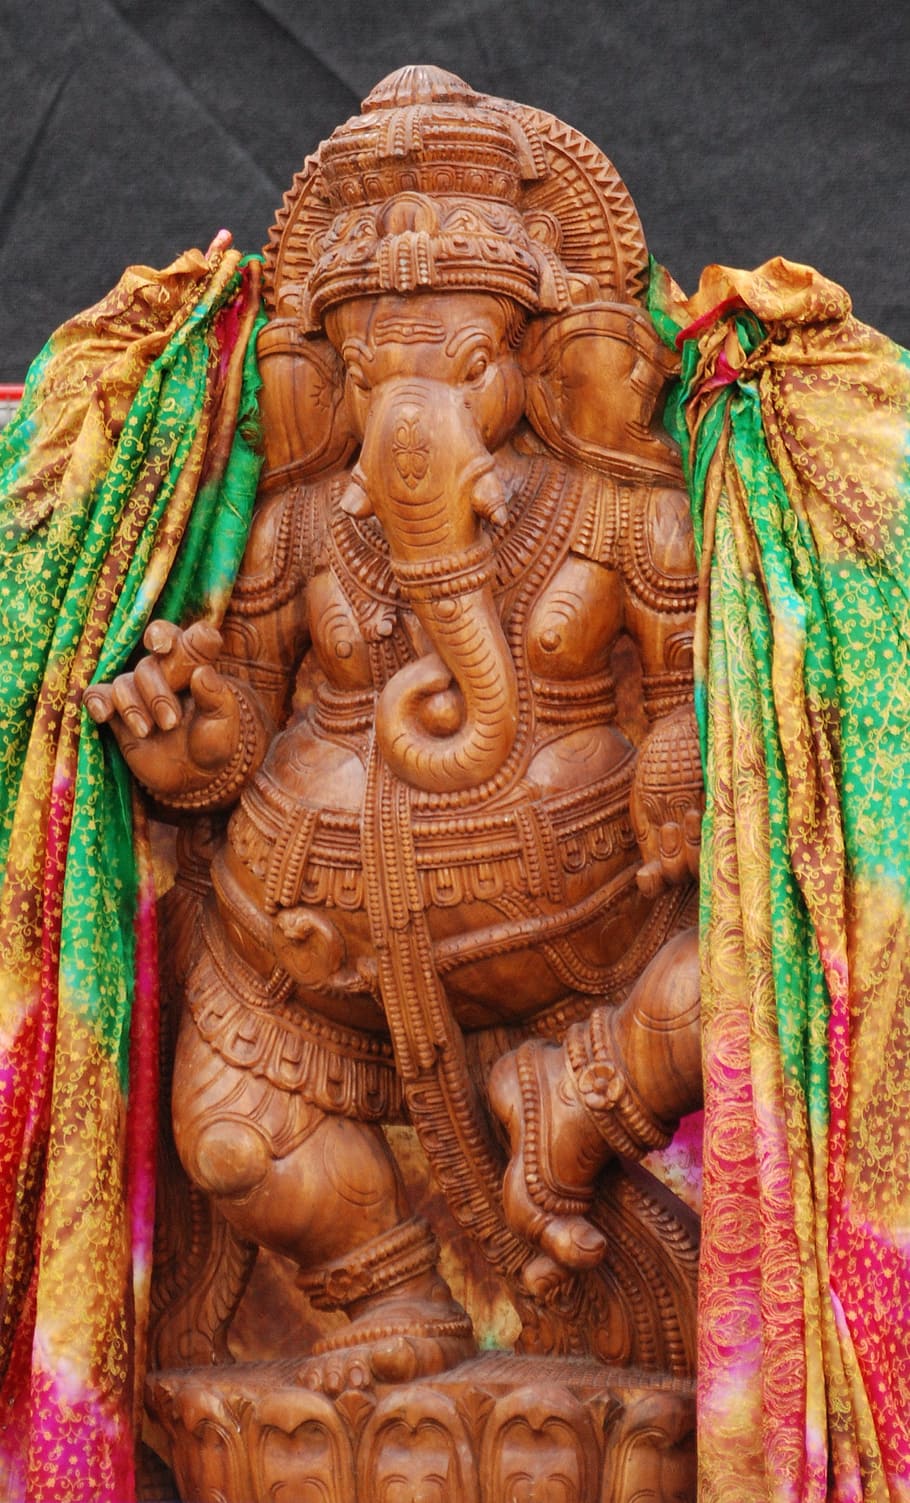 主ガネーシャ像, ガネーシャ, 象, ヒンズー教, 神, アジア, インド, 宗教, アートクラフト